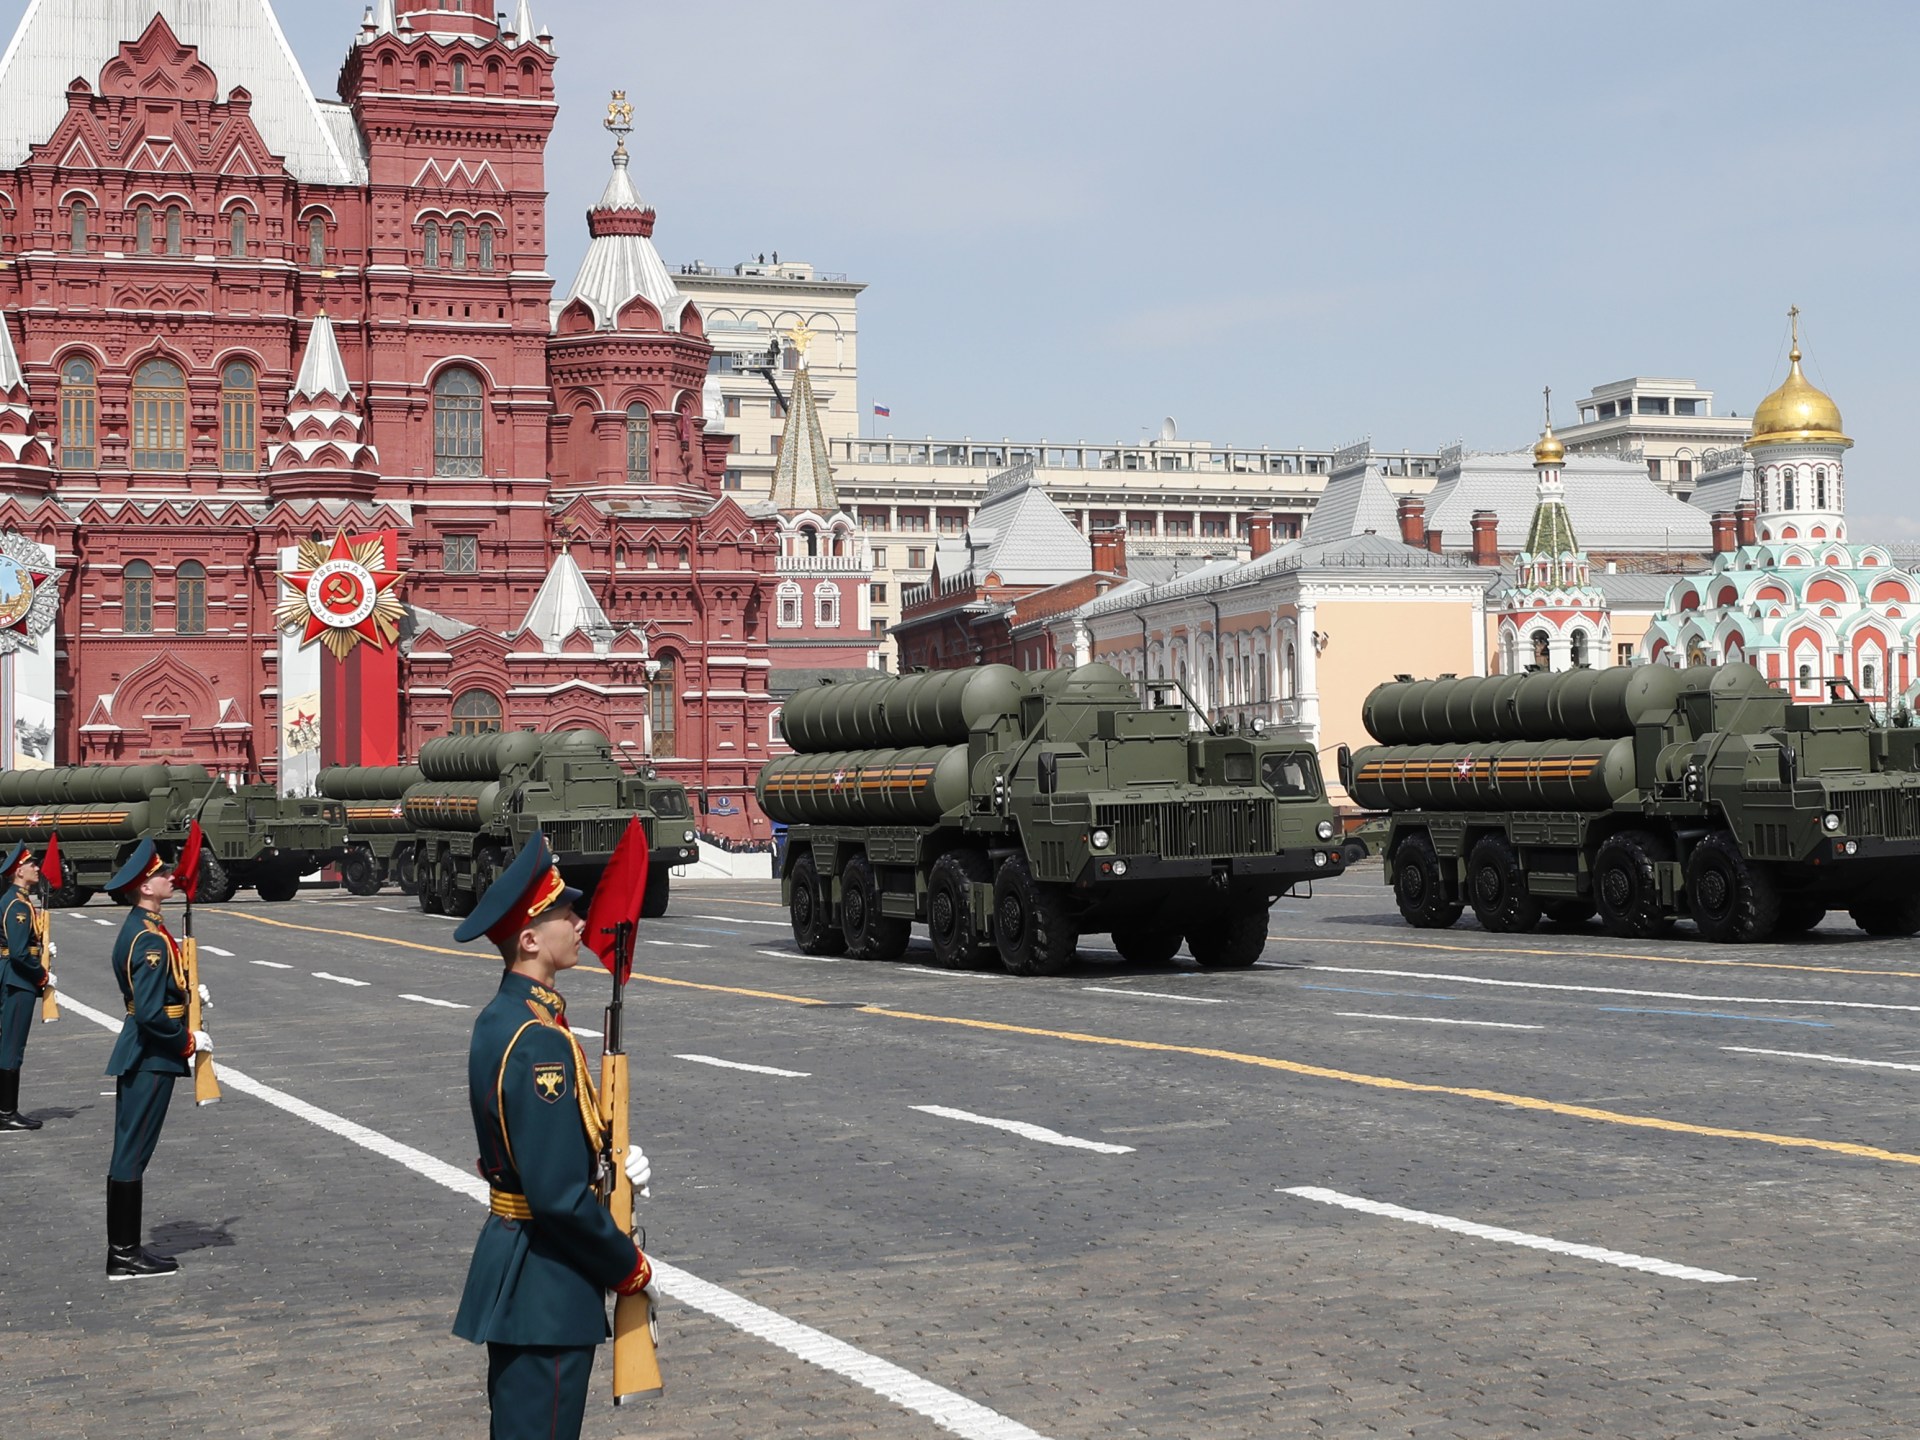 ما الأسلحة النووية التكتيكية التي تجري روسيا تدريبات لاستخدامها؟ | سياسة – البوكس نيوز